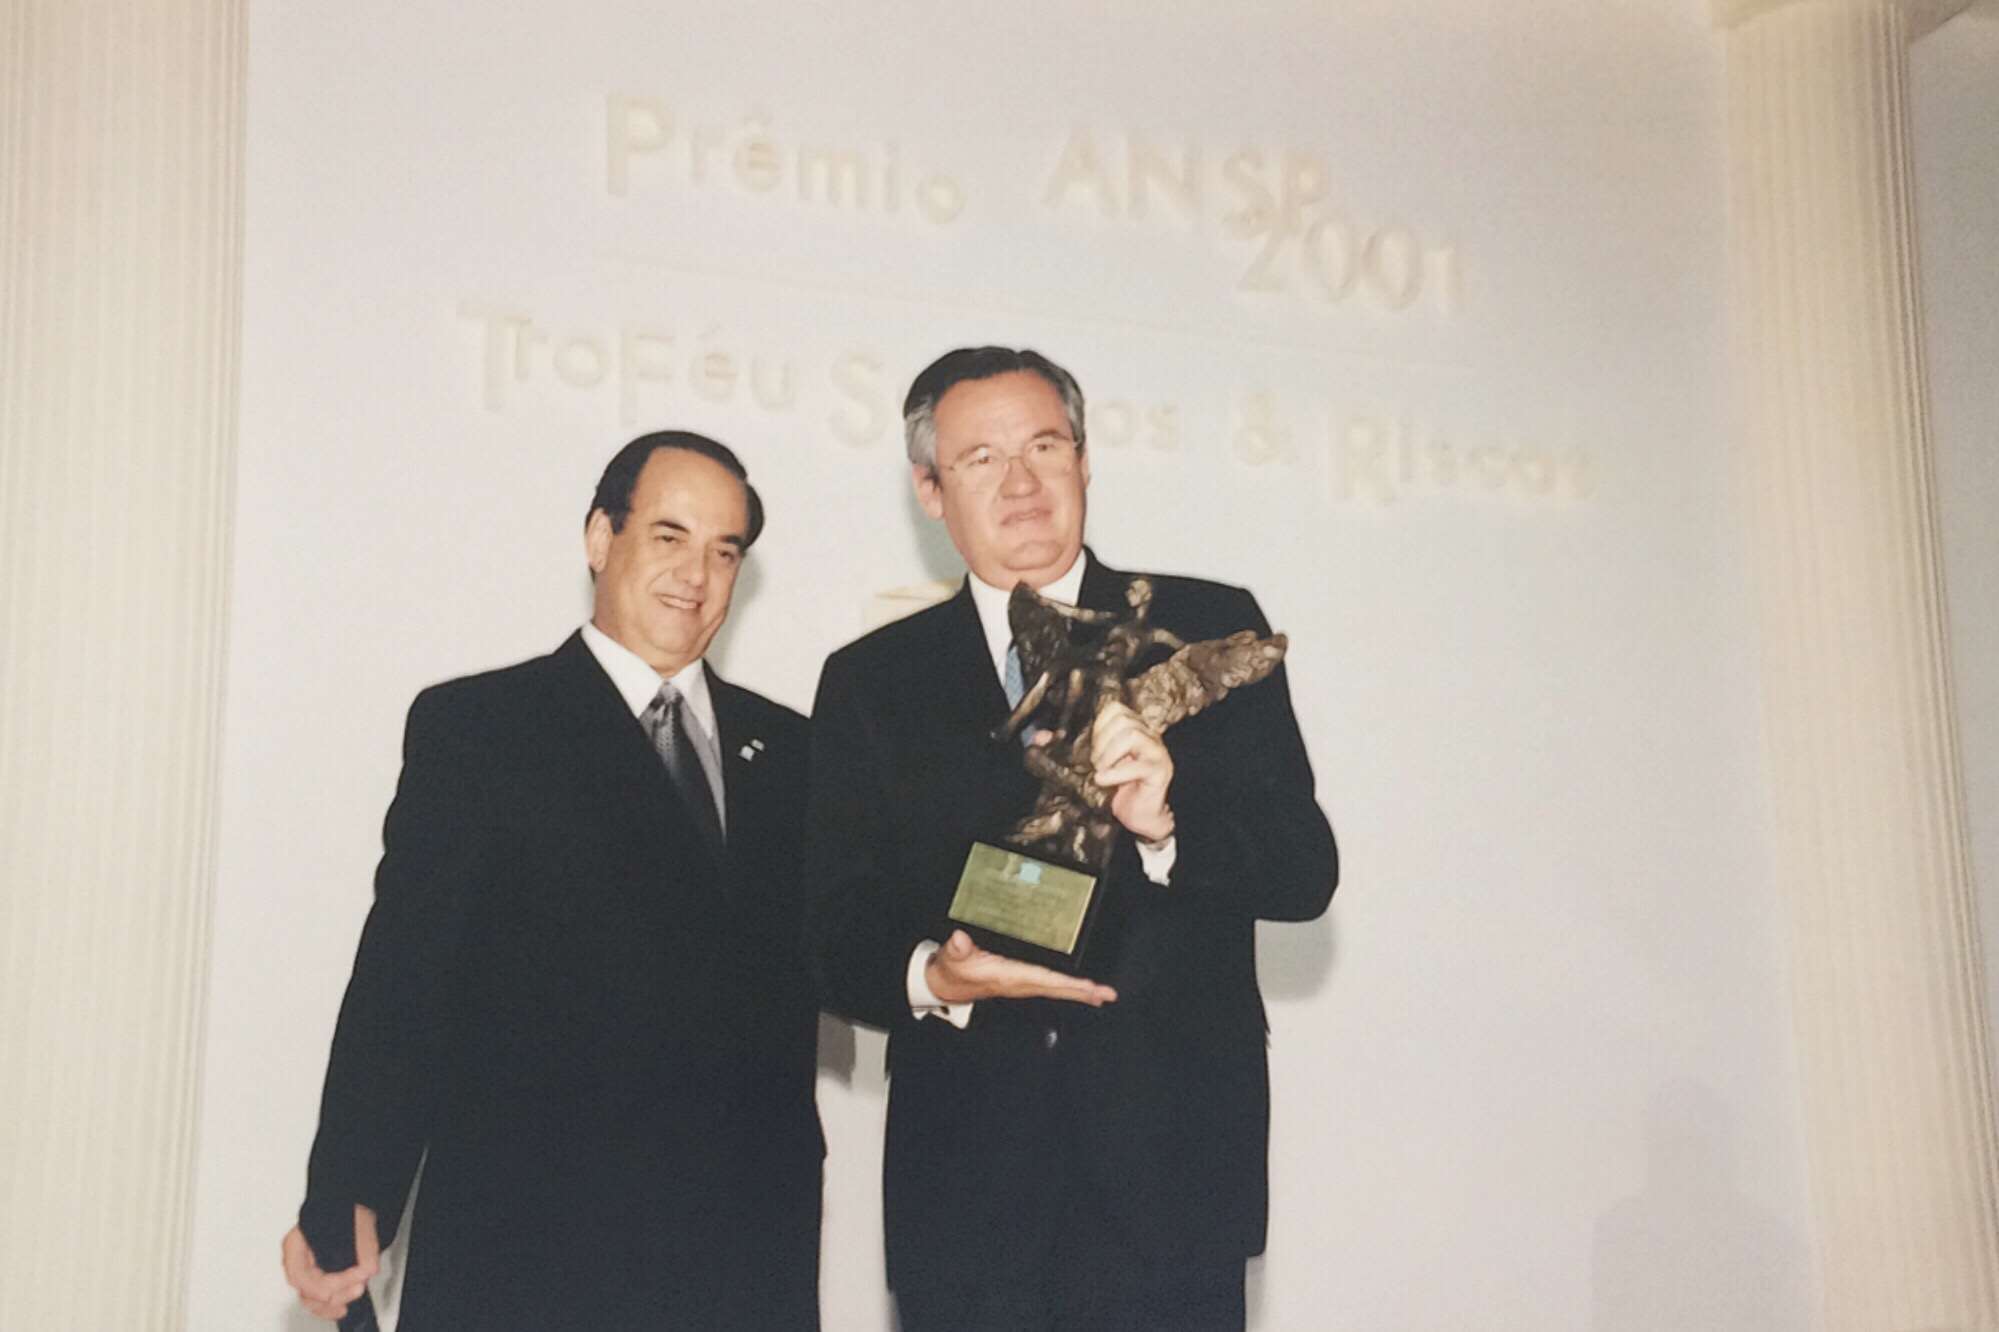 Prêmio ANSP 2001 – Troféu Seguros e Riscos